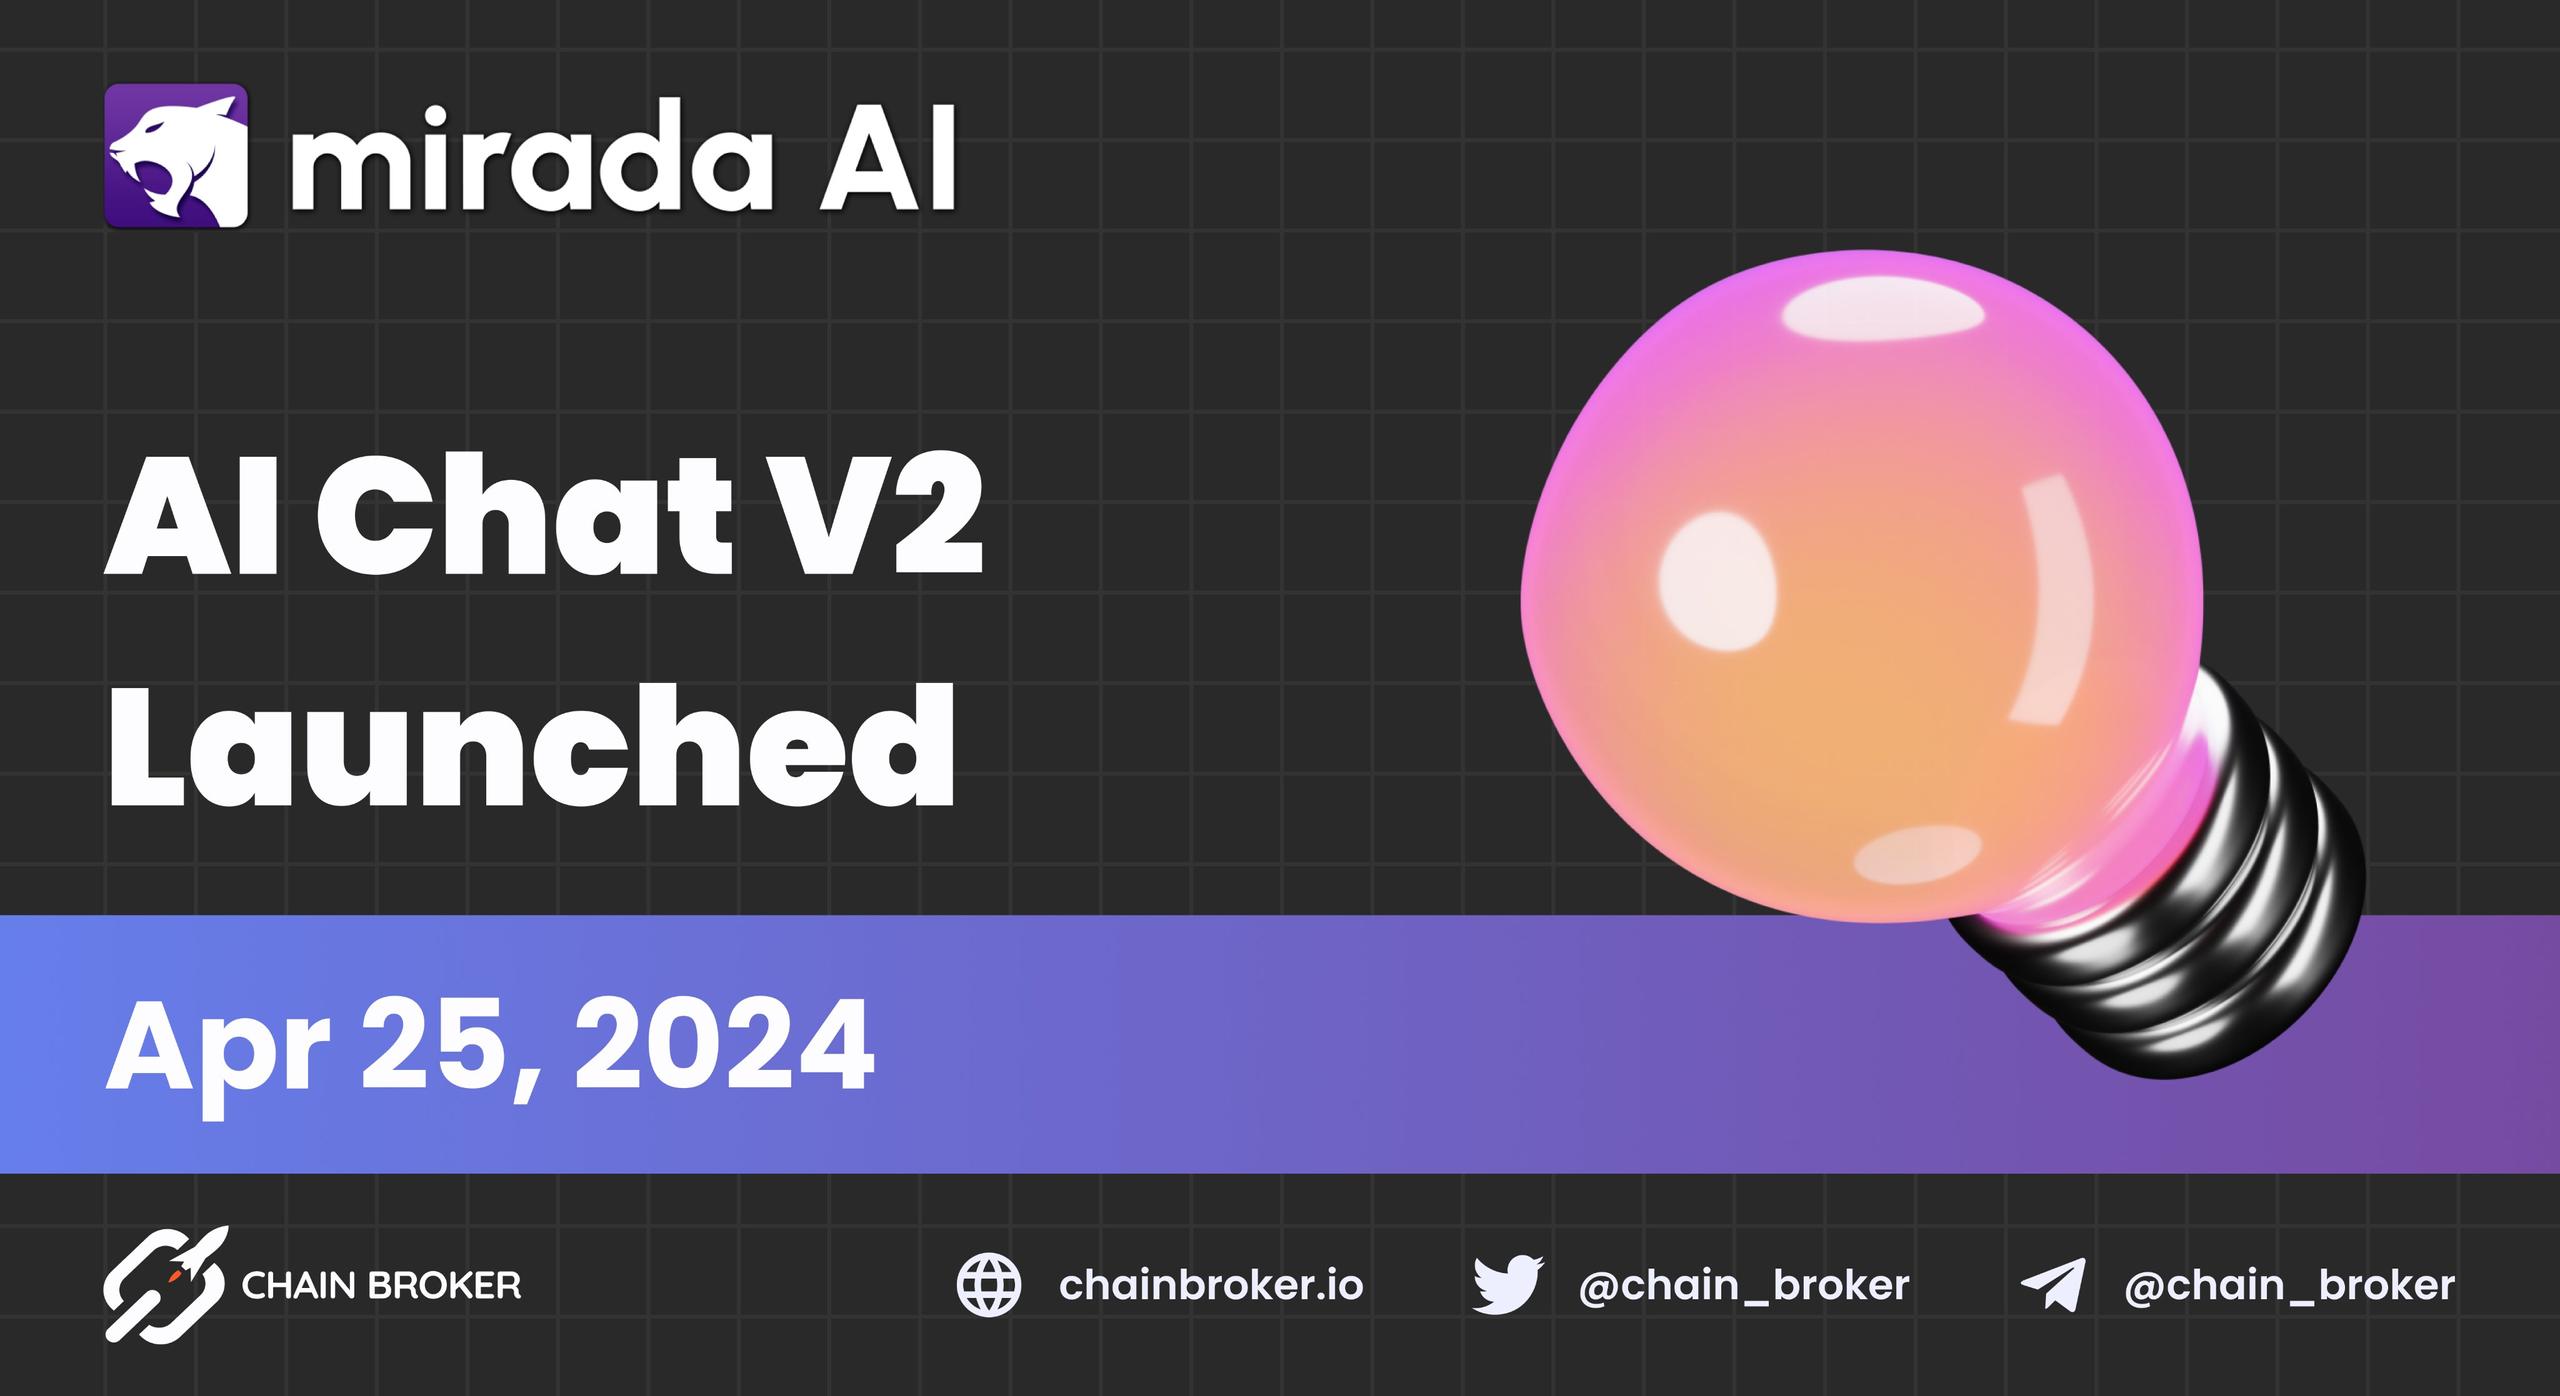 Mirada AI launches AI Chat V2